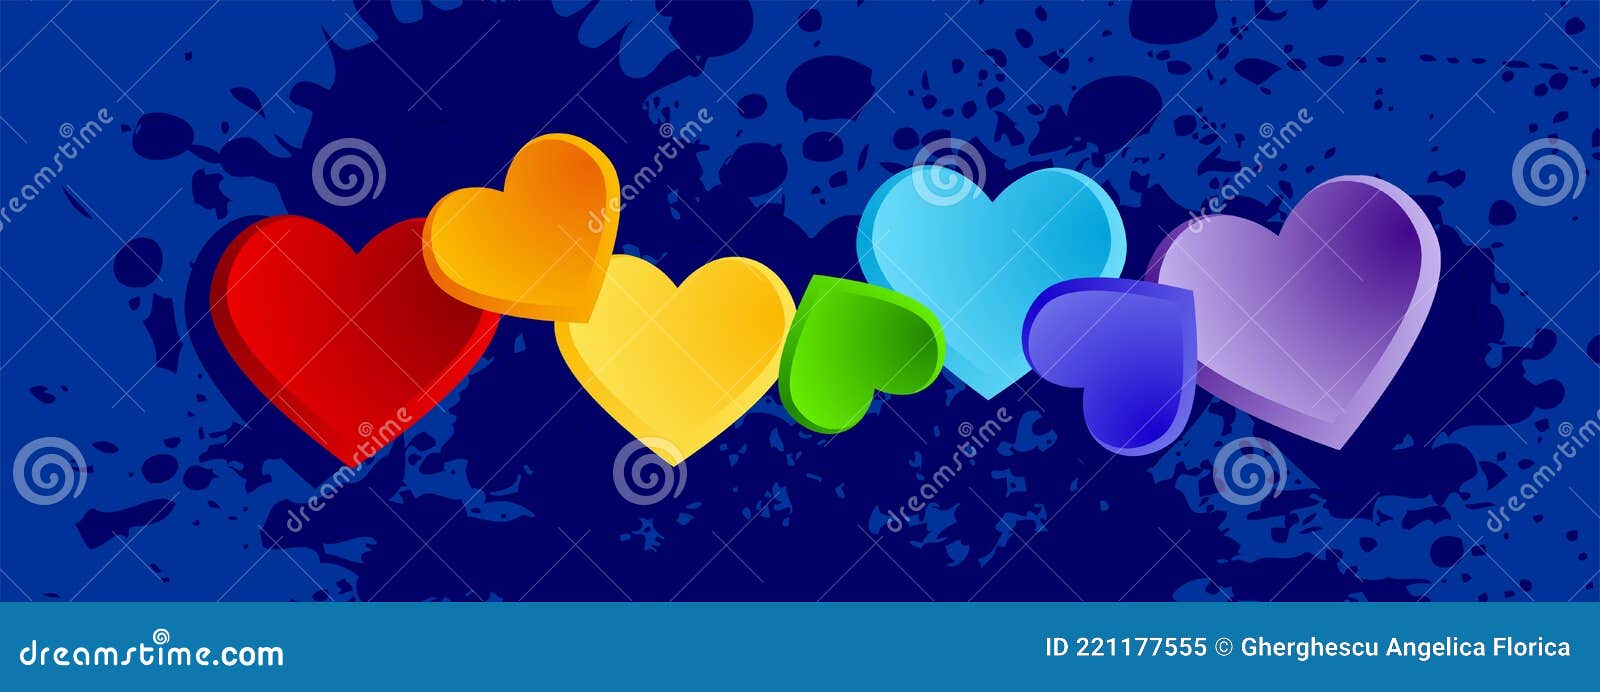 Corazones De Arcoiris Coloridos Para Portada De Facebook Vectorial De  Vacaciones Valentino Stock de ilustración - Ilustración de blanco,  vacaciones: 221177555